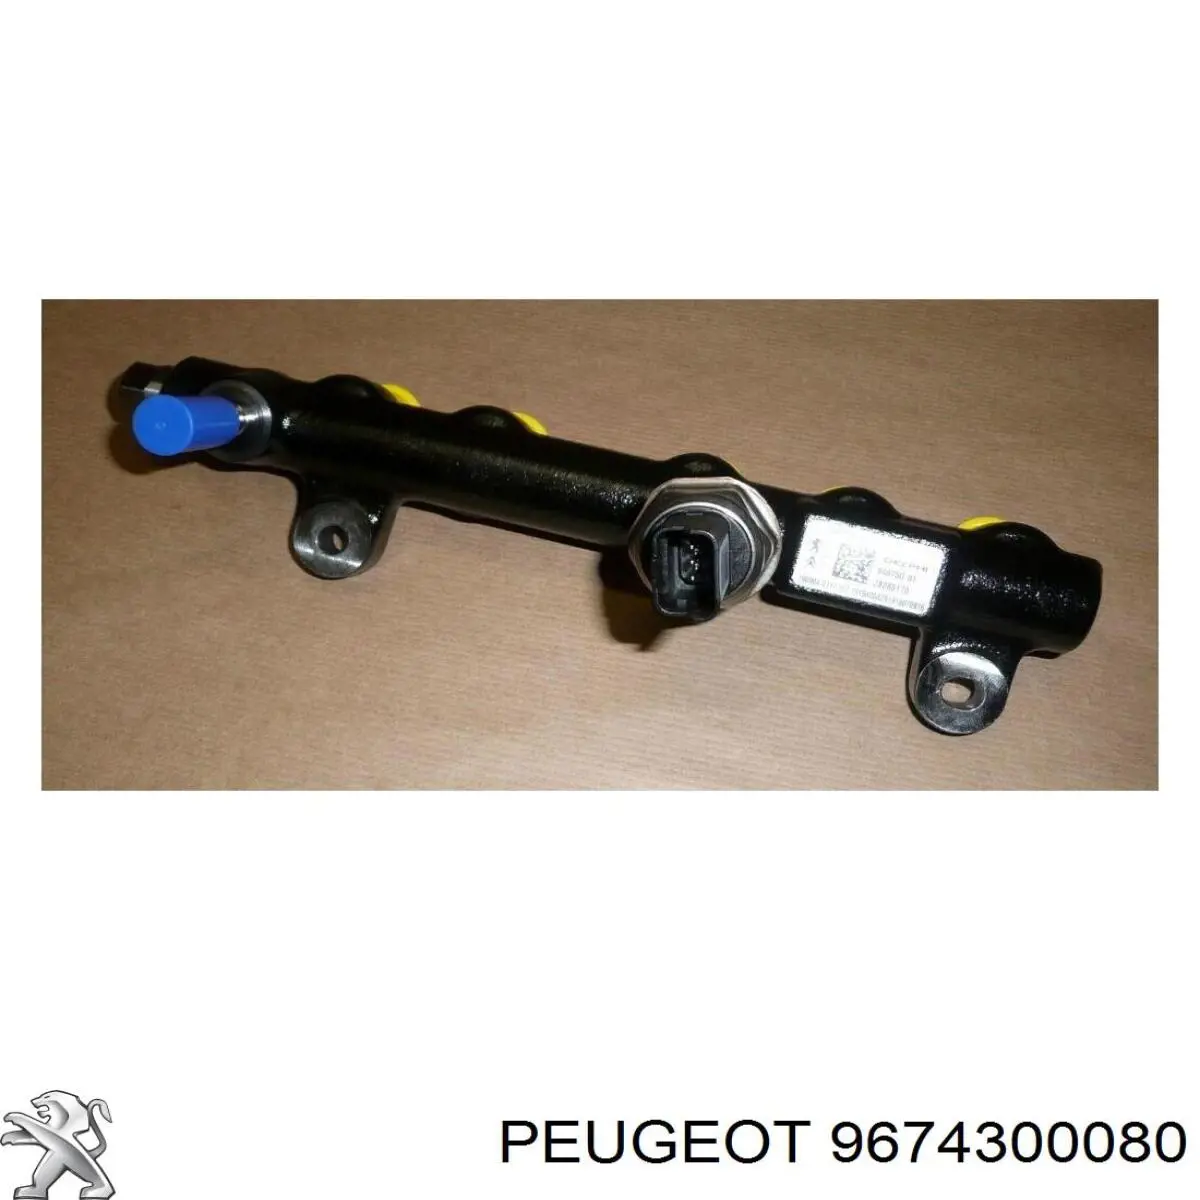 9674300080 Peugeot/Citroen rampa de inyectores